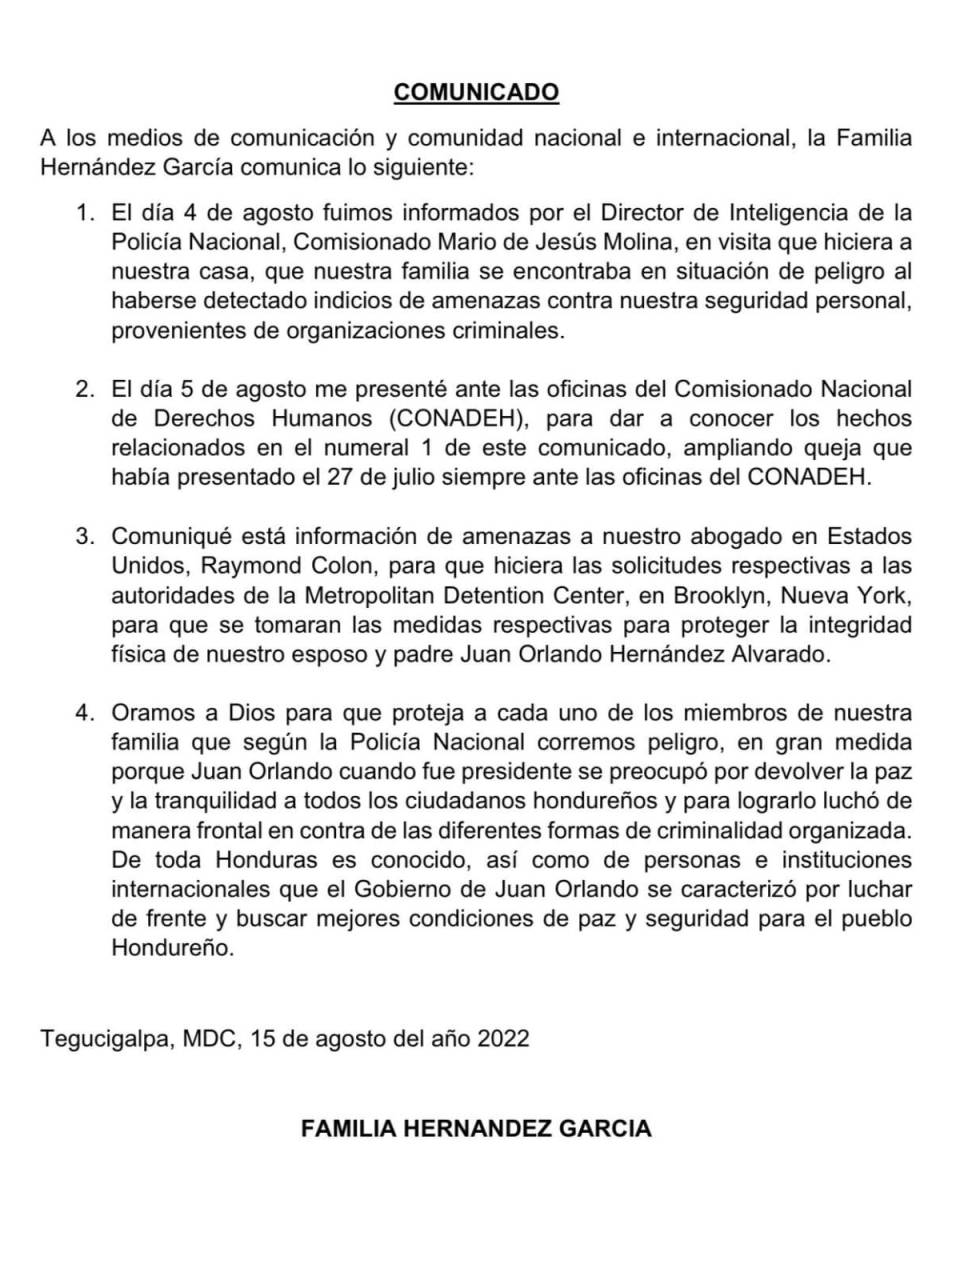 El comunicado publicado por la familia Hernández García ante las supuestas amenazas.